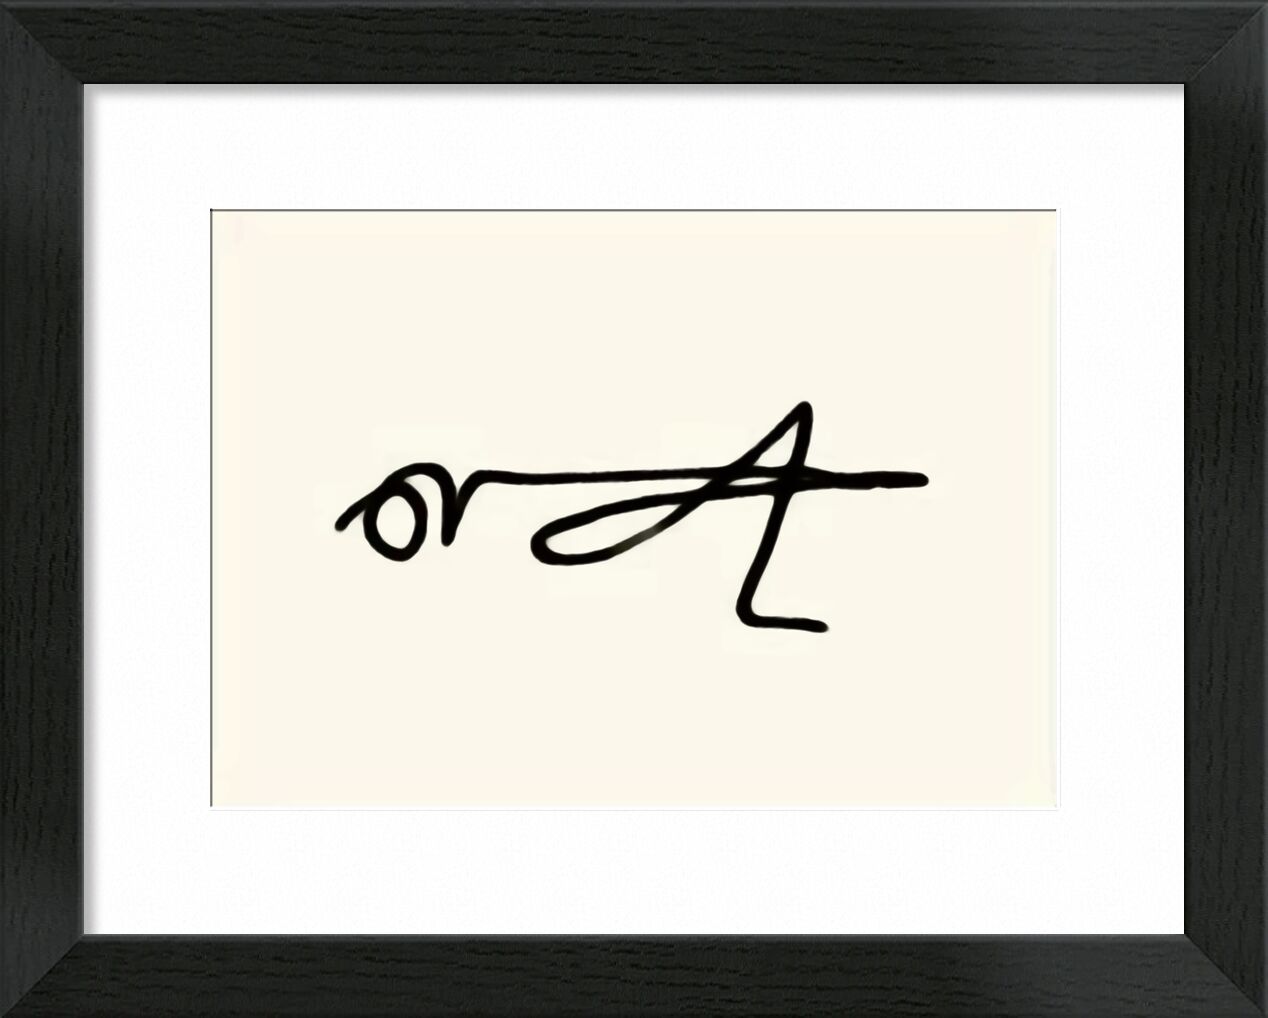 The Grasshopper - Picasso von Bildende Kunst, Prodi Art, Picasso, Zeichnung, Strichzeichnung, Heuschrecke